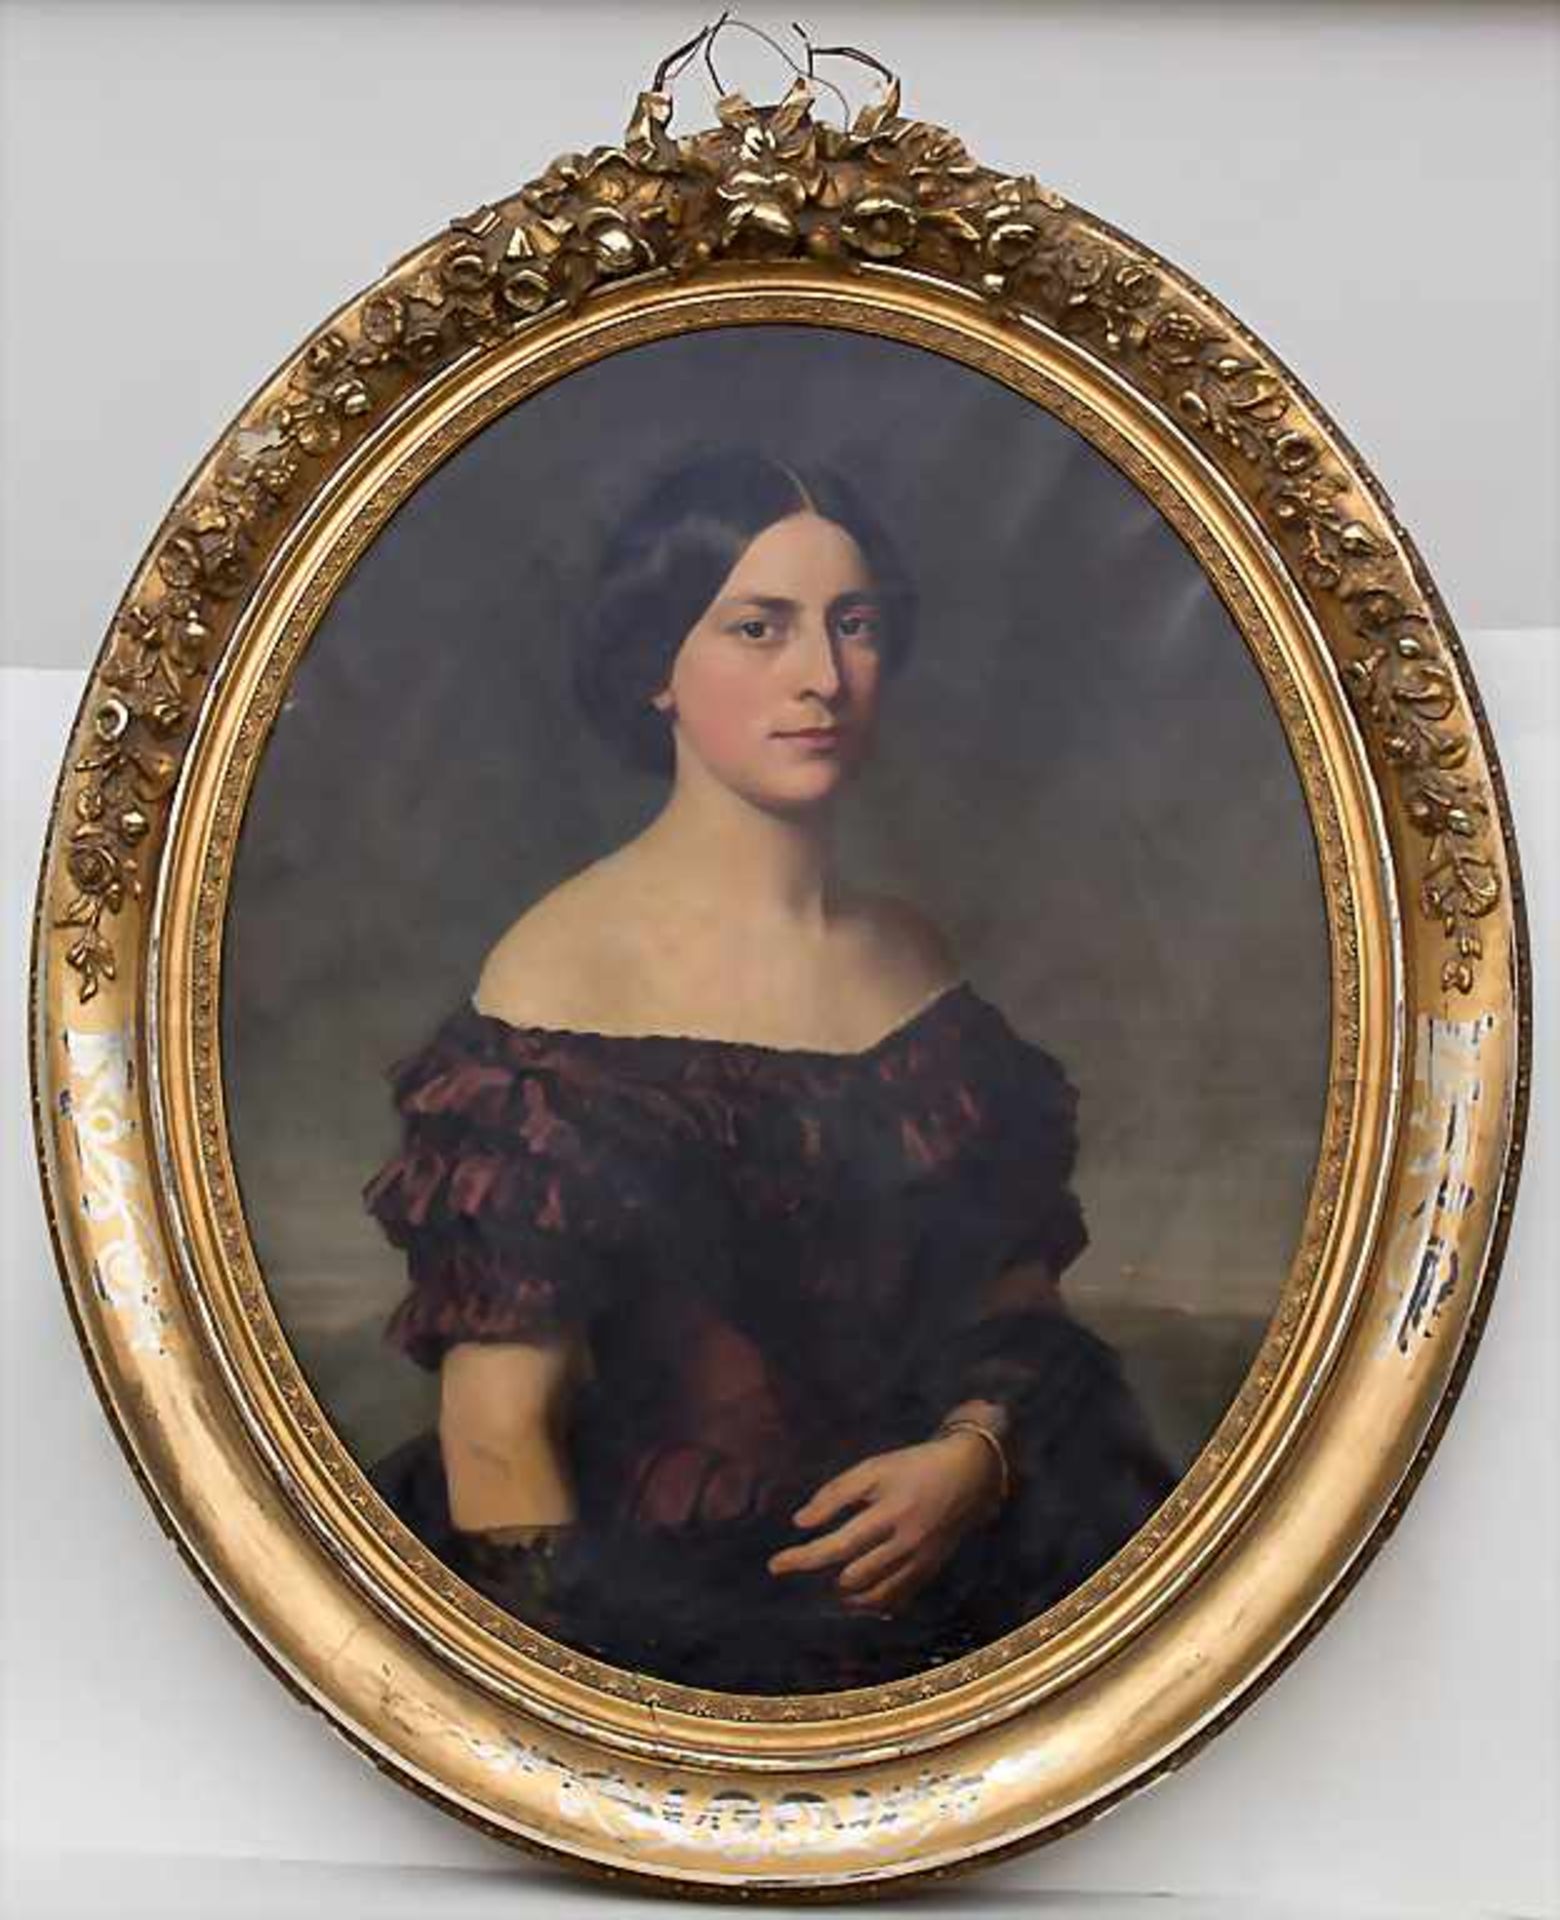 Unbekannter Künstler des 19. Jh., Biedermeier-Porträt 'Junge Dame' / A Biedermeier portrait 'Young